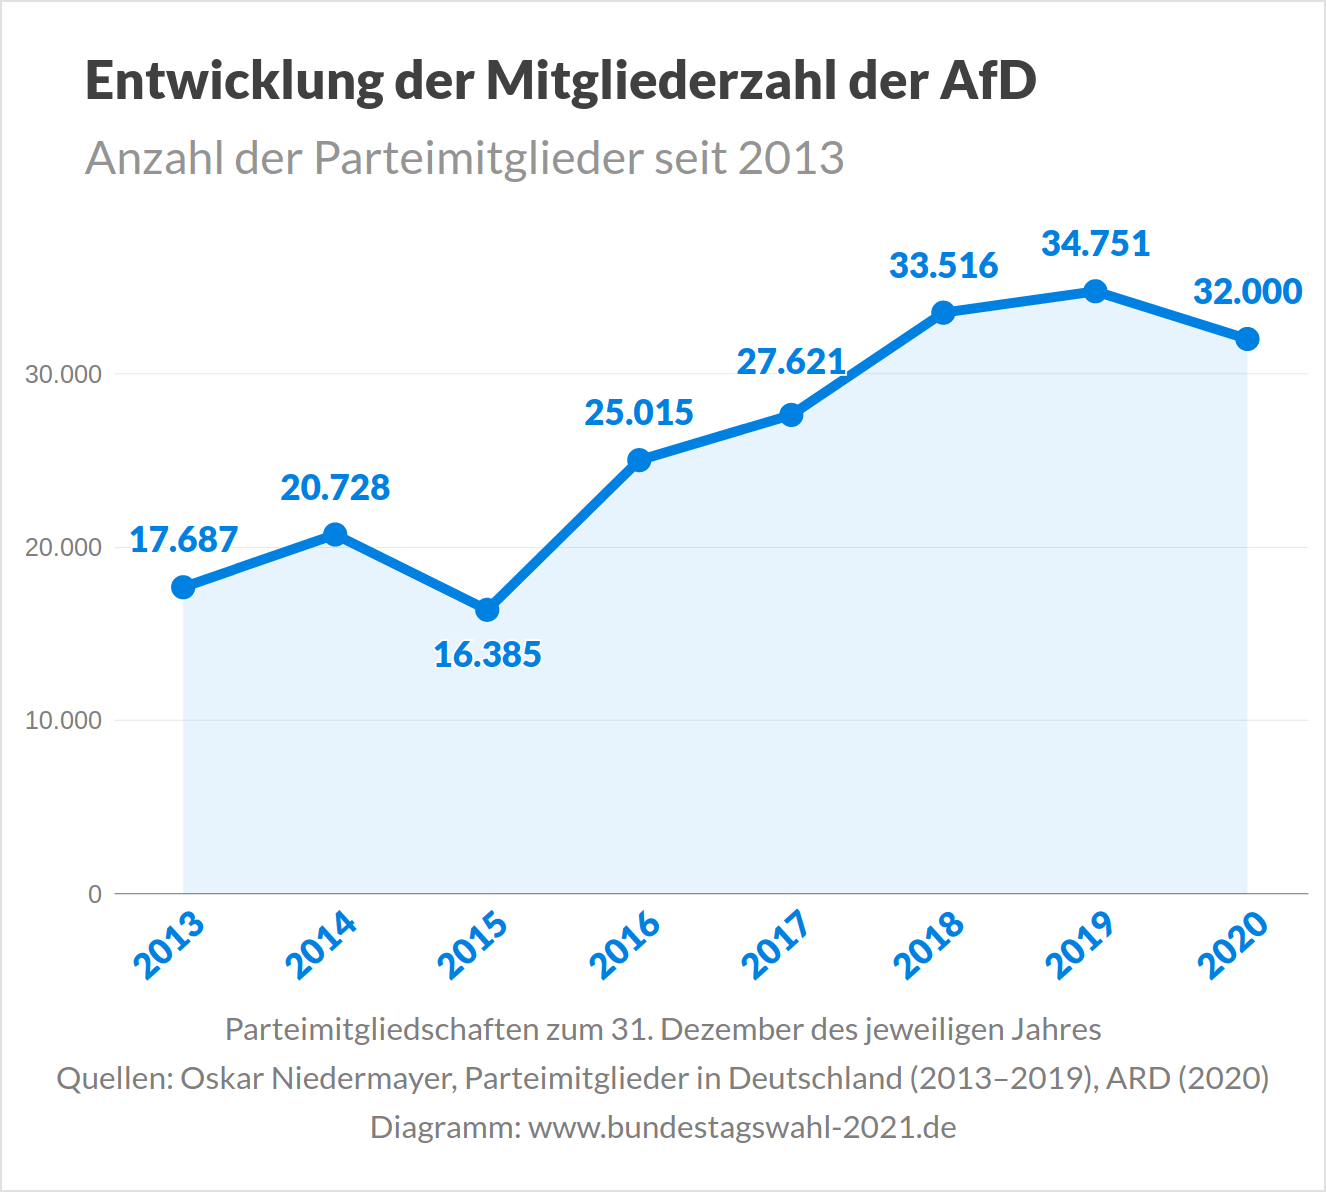 Entwicklung der Mitgliederzahl der AfD vor der Bundestagswahl 2021